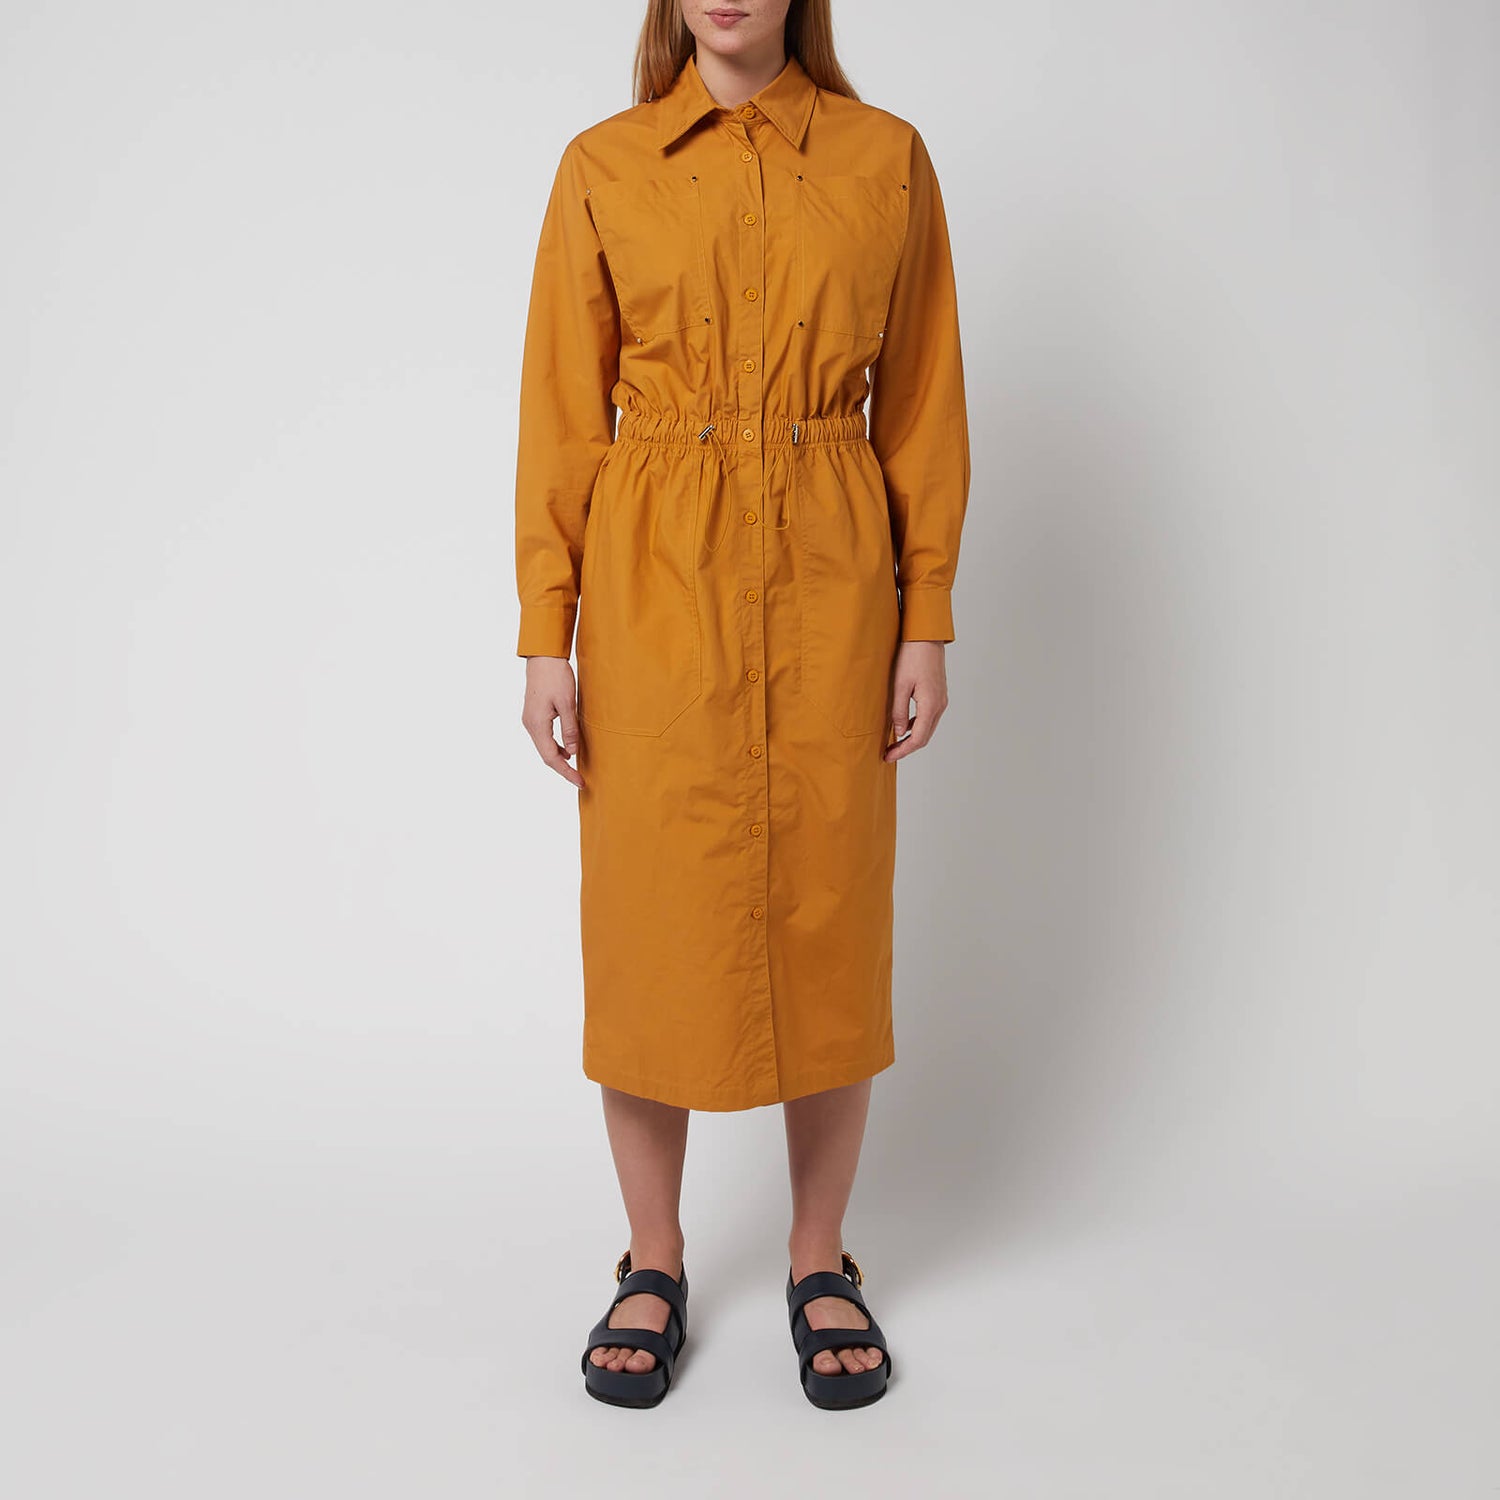 L.F Markey Women's Remi Dress - Mustard - UK 8